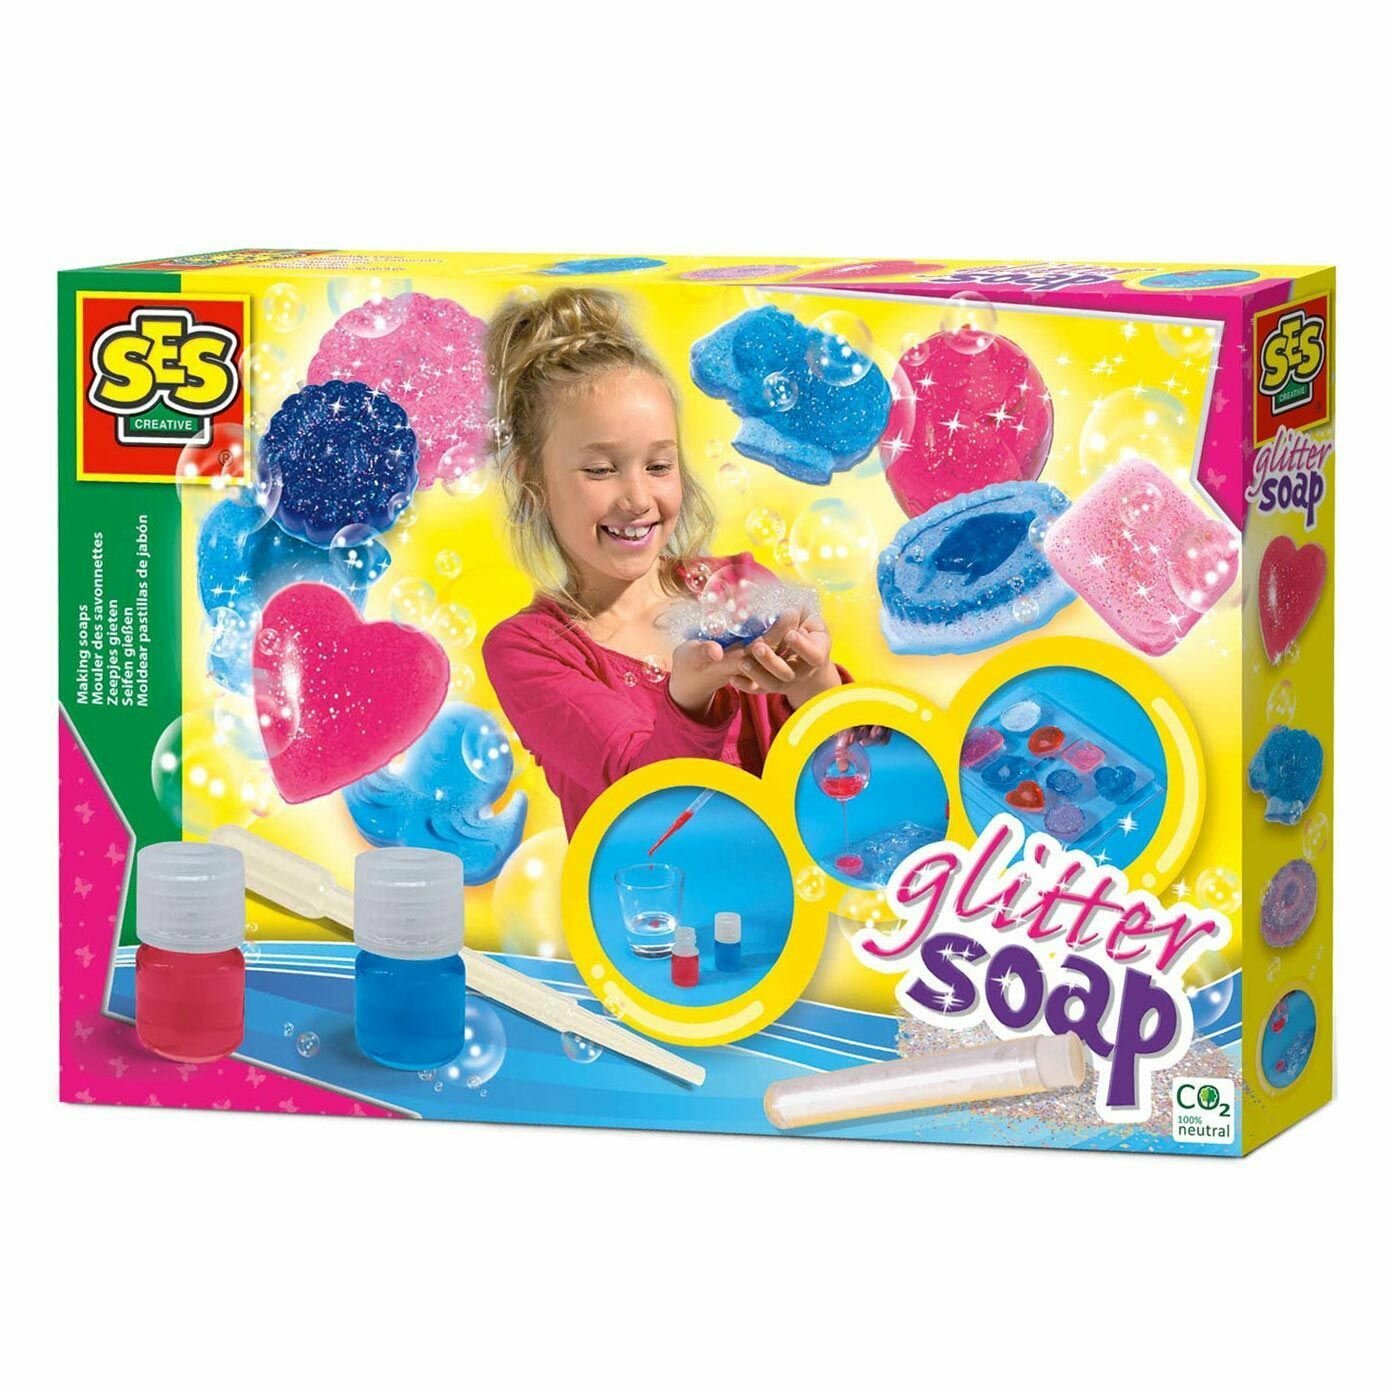 Набор детский ремесленный "Сделай мыло с блестками", пресс-форма, 2 цвета мыла, блестки, 7 лет+